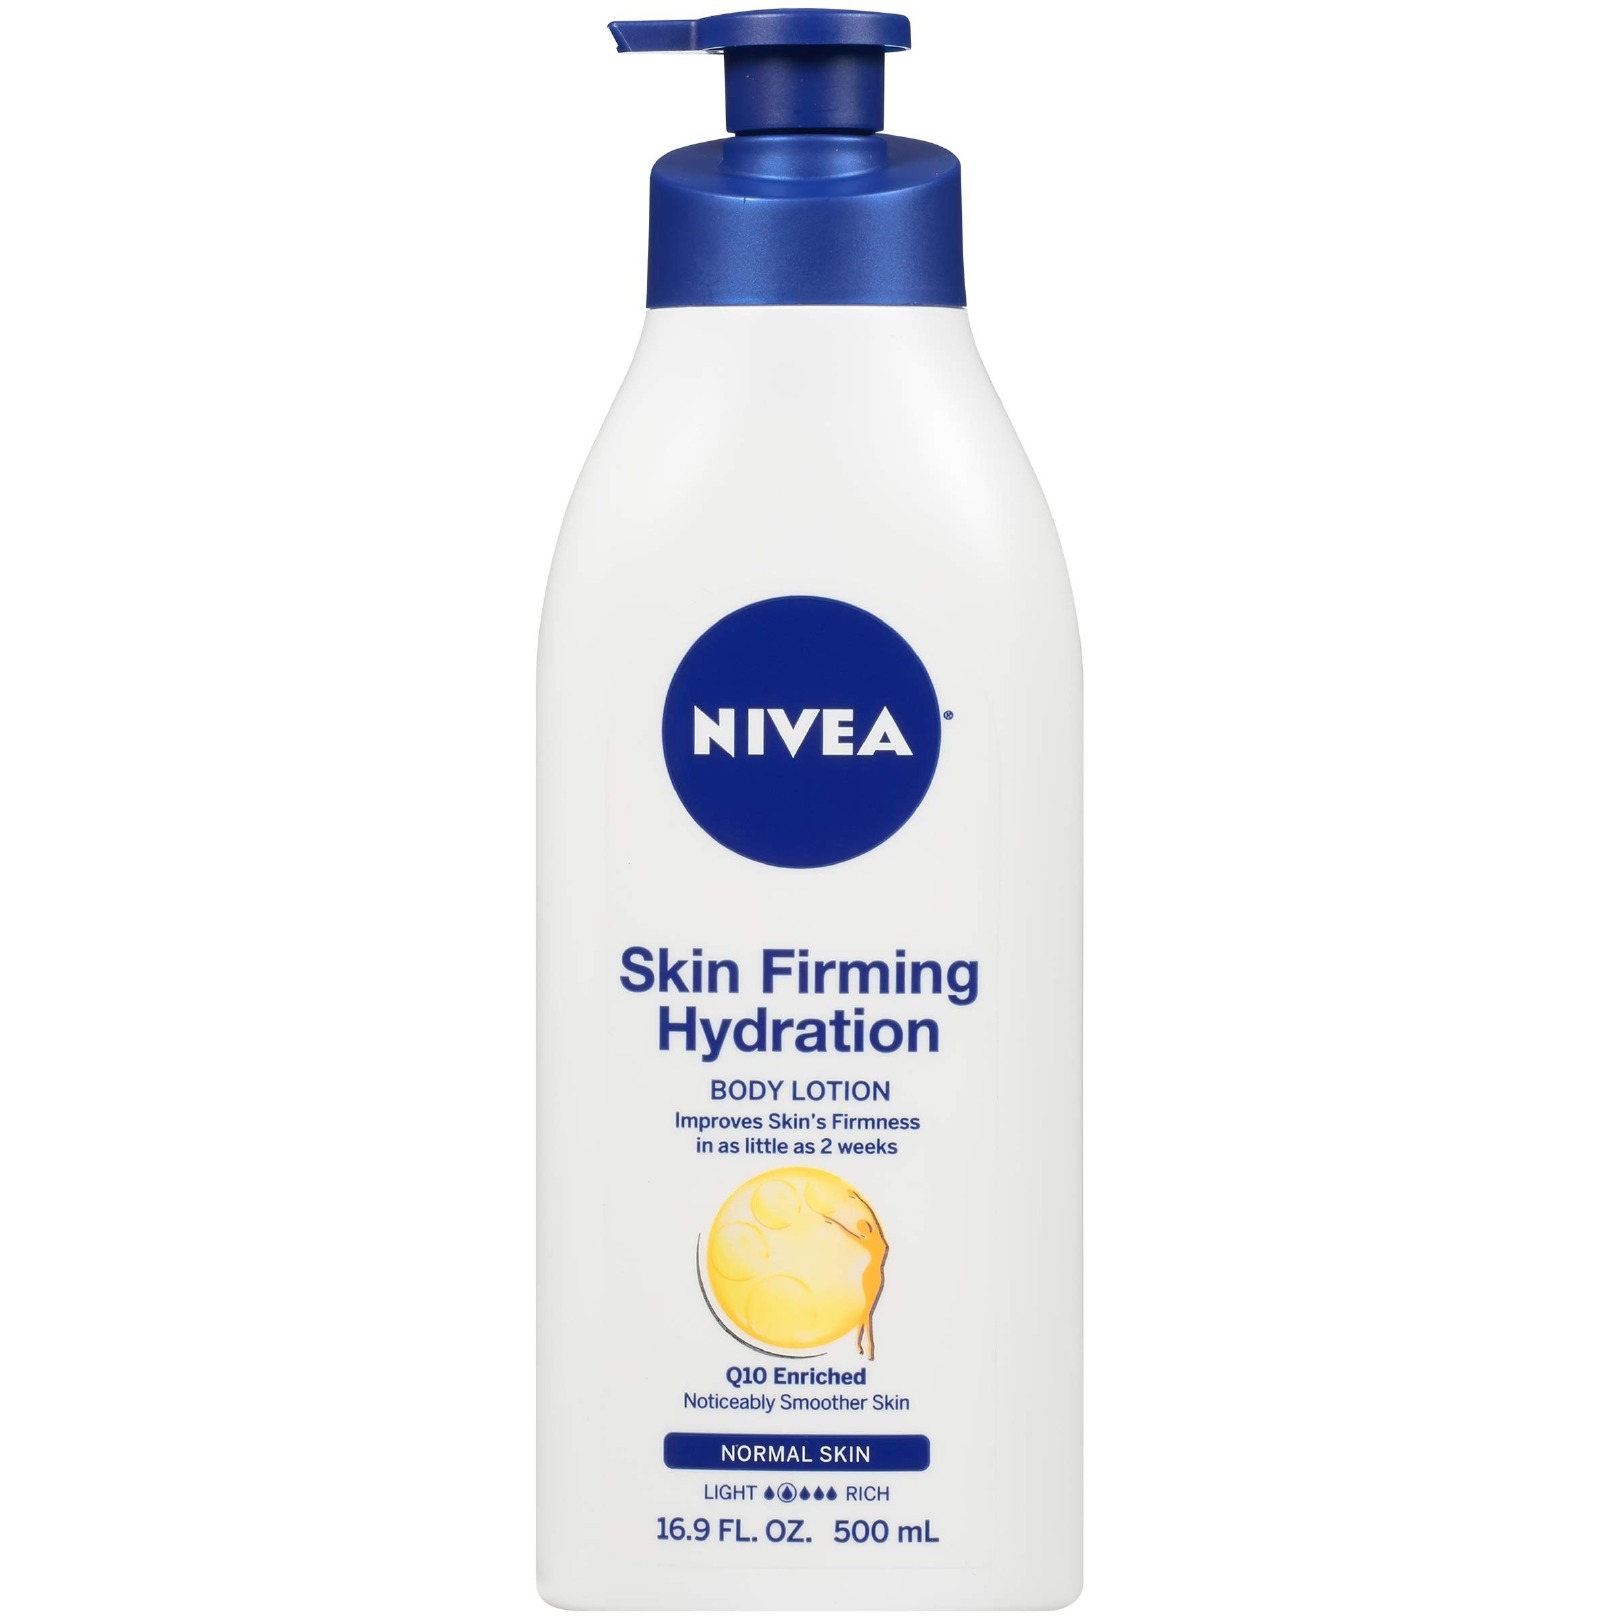 Nivea Skin Firming Hydration cream